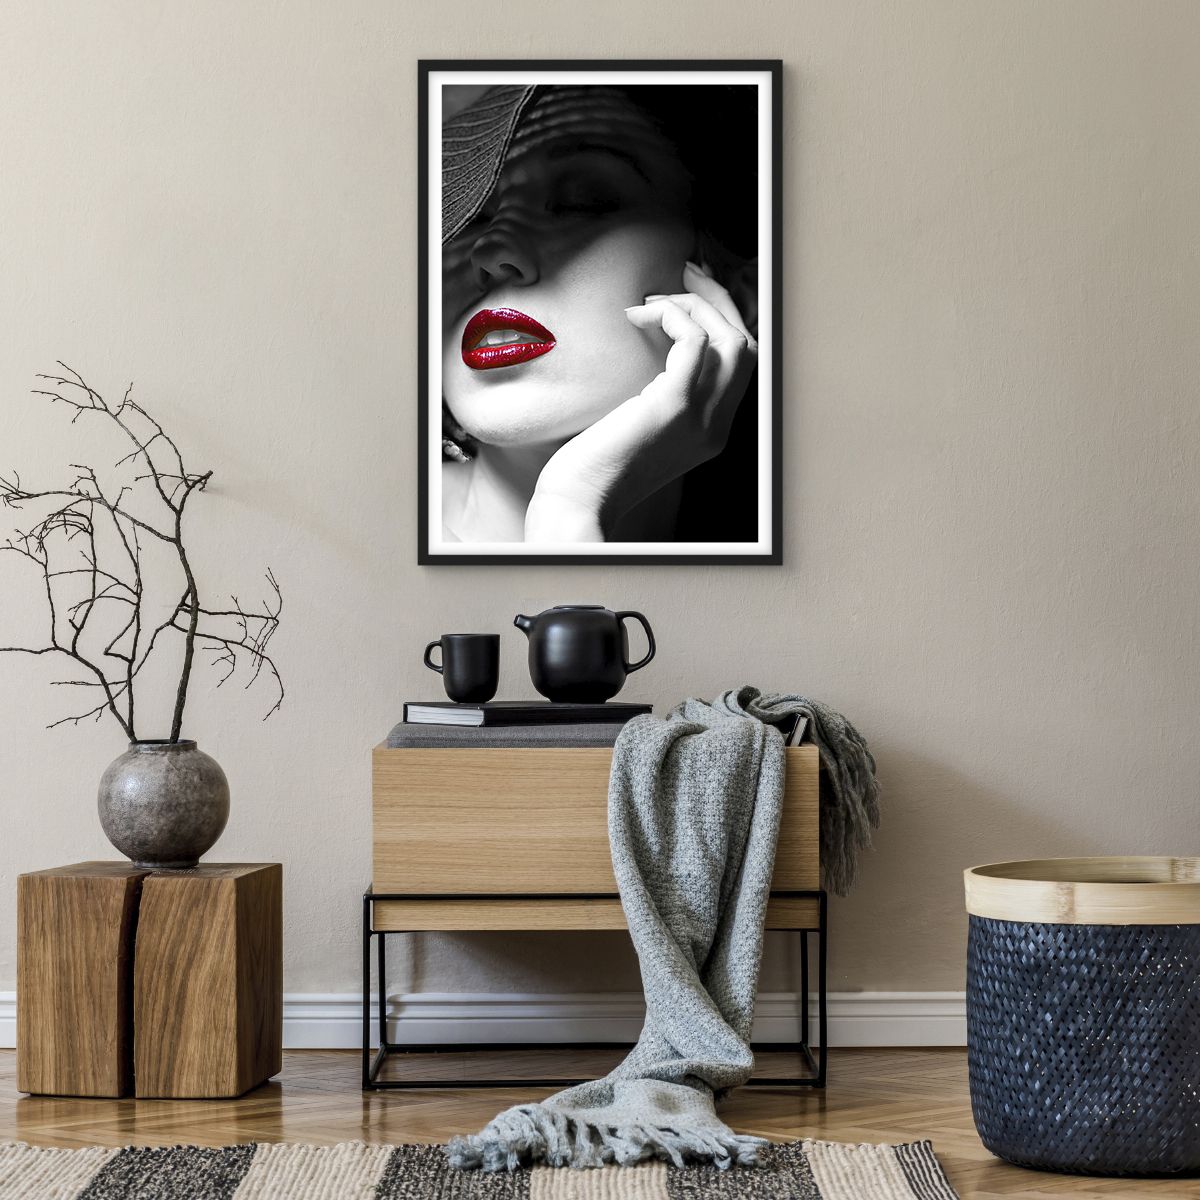 Affiche dans un cadre noir Femme, Affiche dans un cadre noir Lèvres Rouges, Affiche dans un cadre noir Mode, Affiche dans un cadre noir Portrait D'Une Femme, Affiche dans un cadre noir Photo Artistique